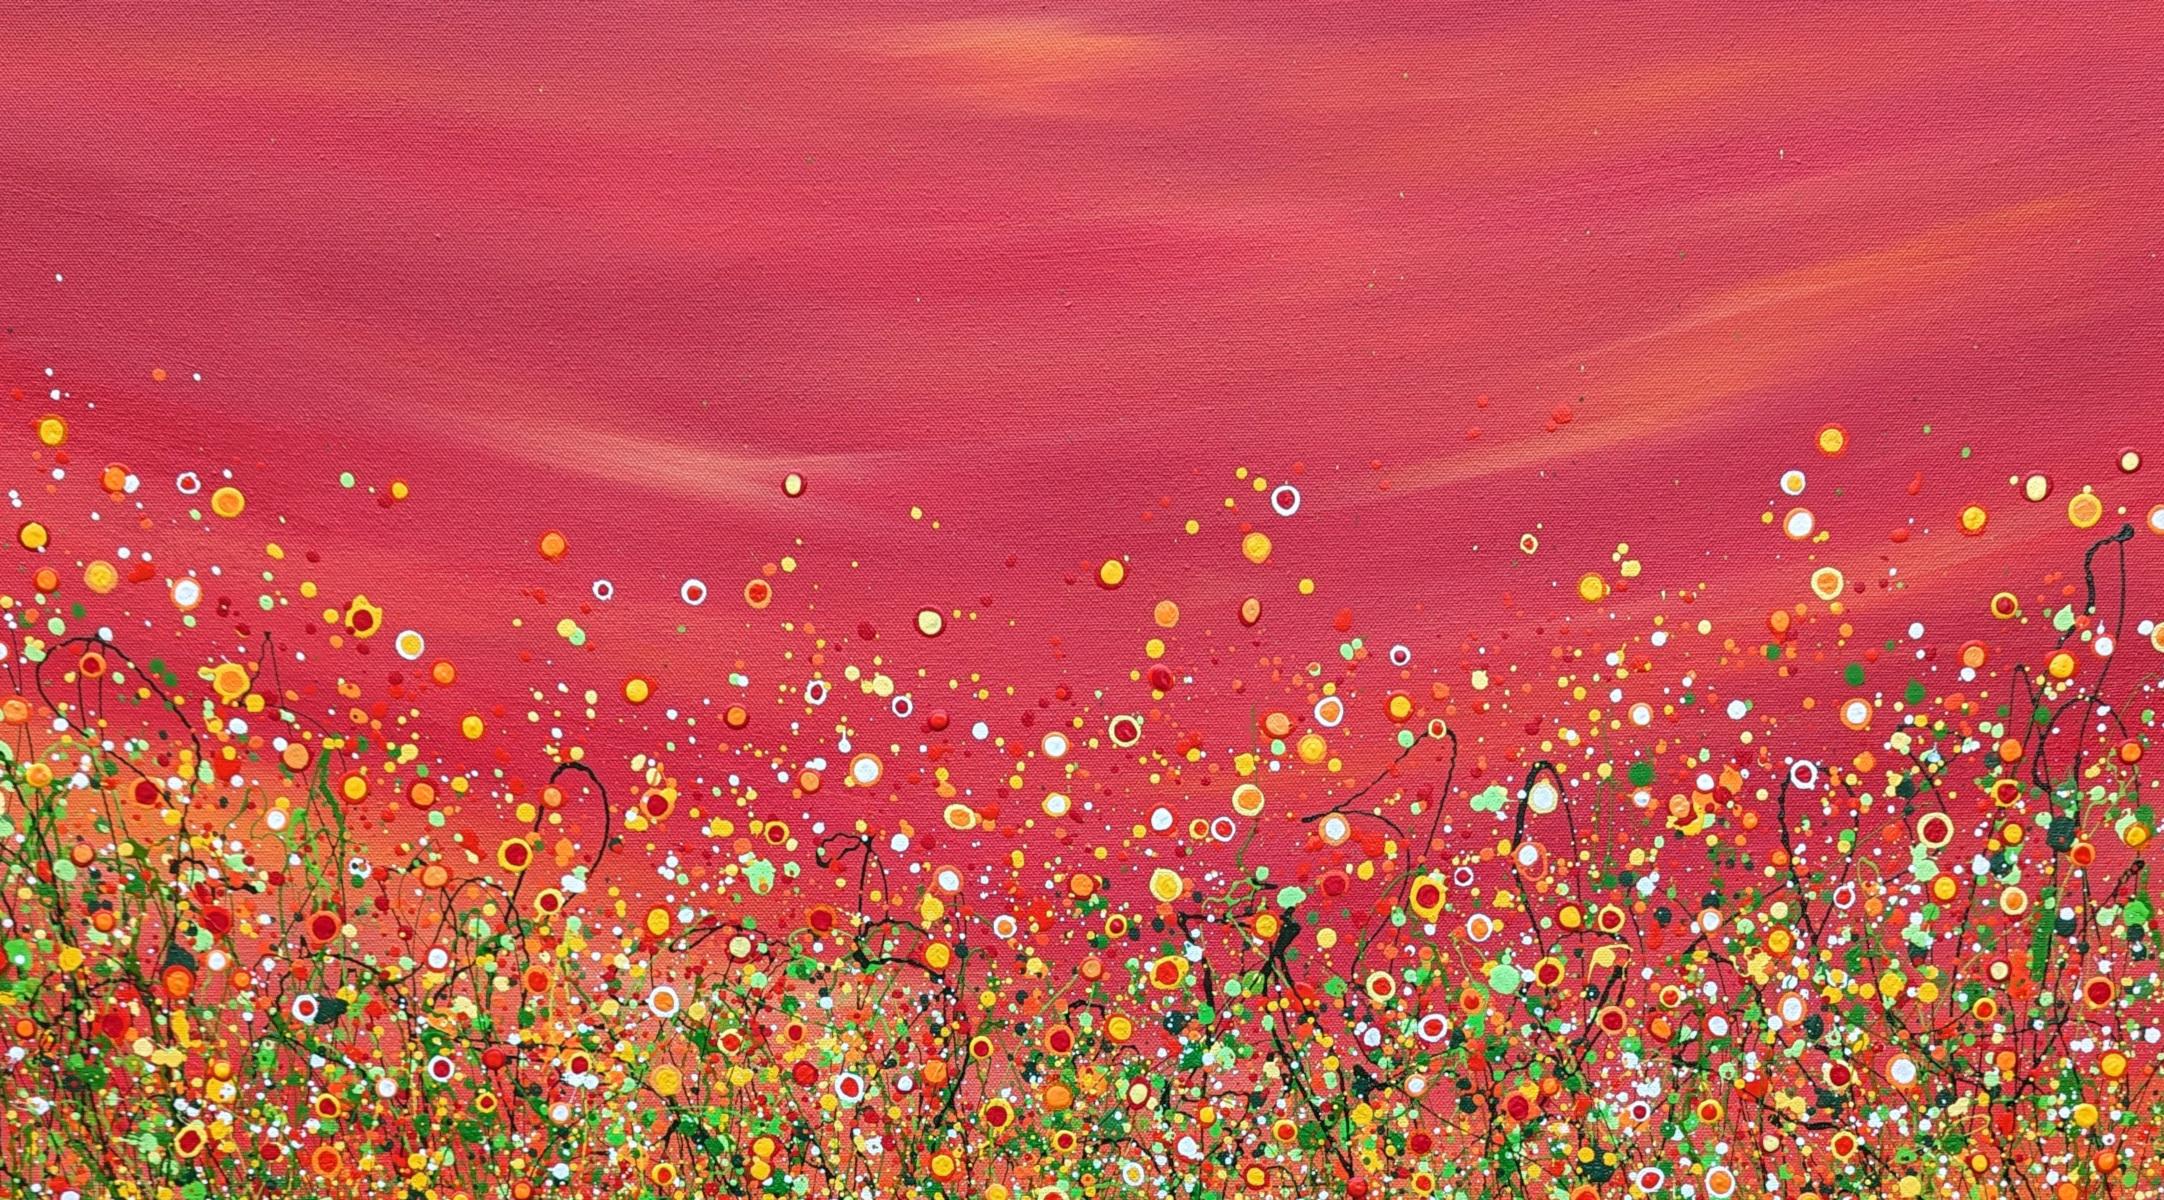 Les prairies rouges du ciel - Painting de Lucy Moore